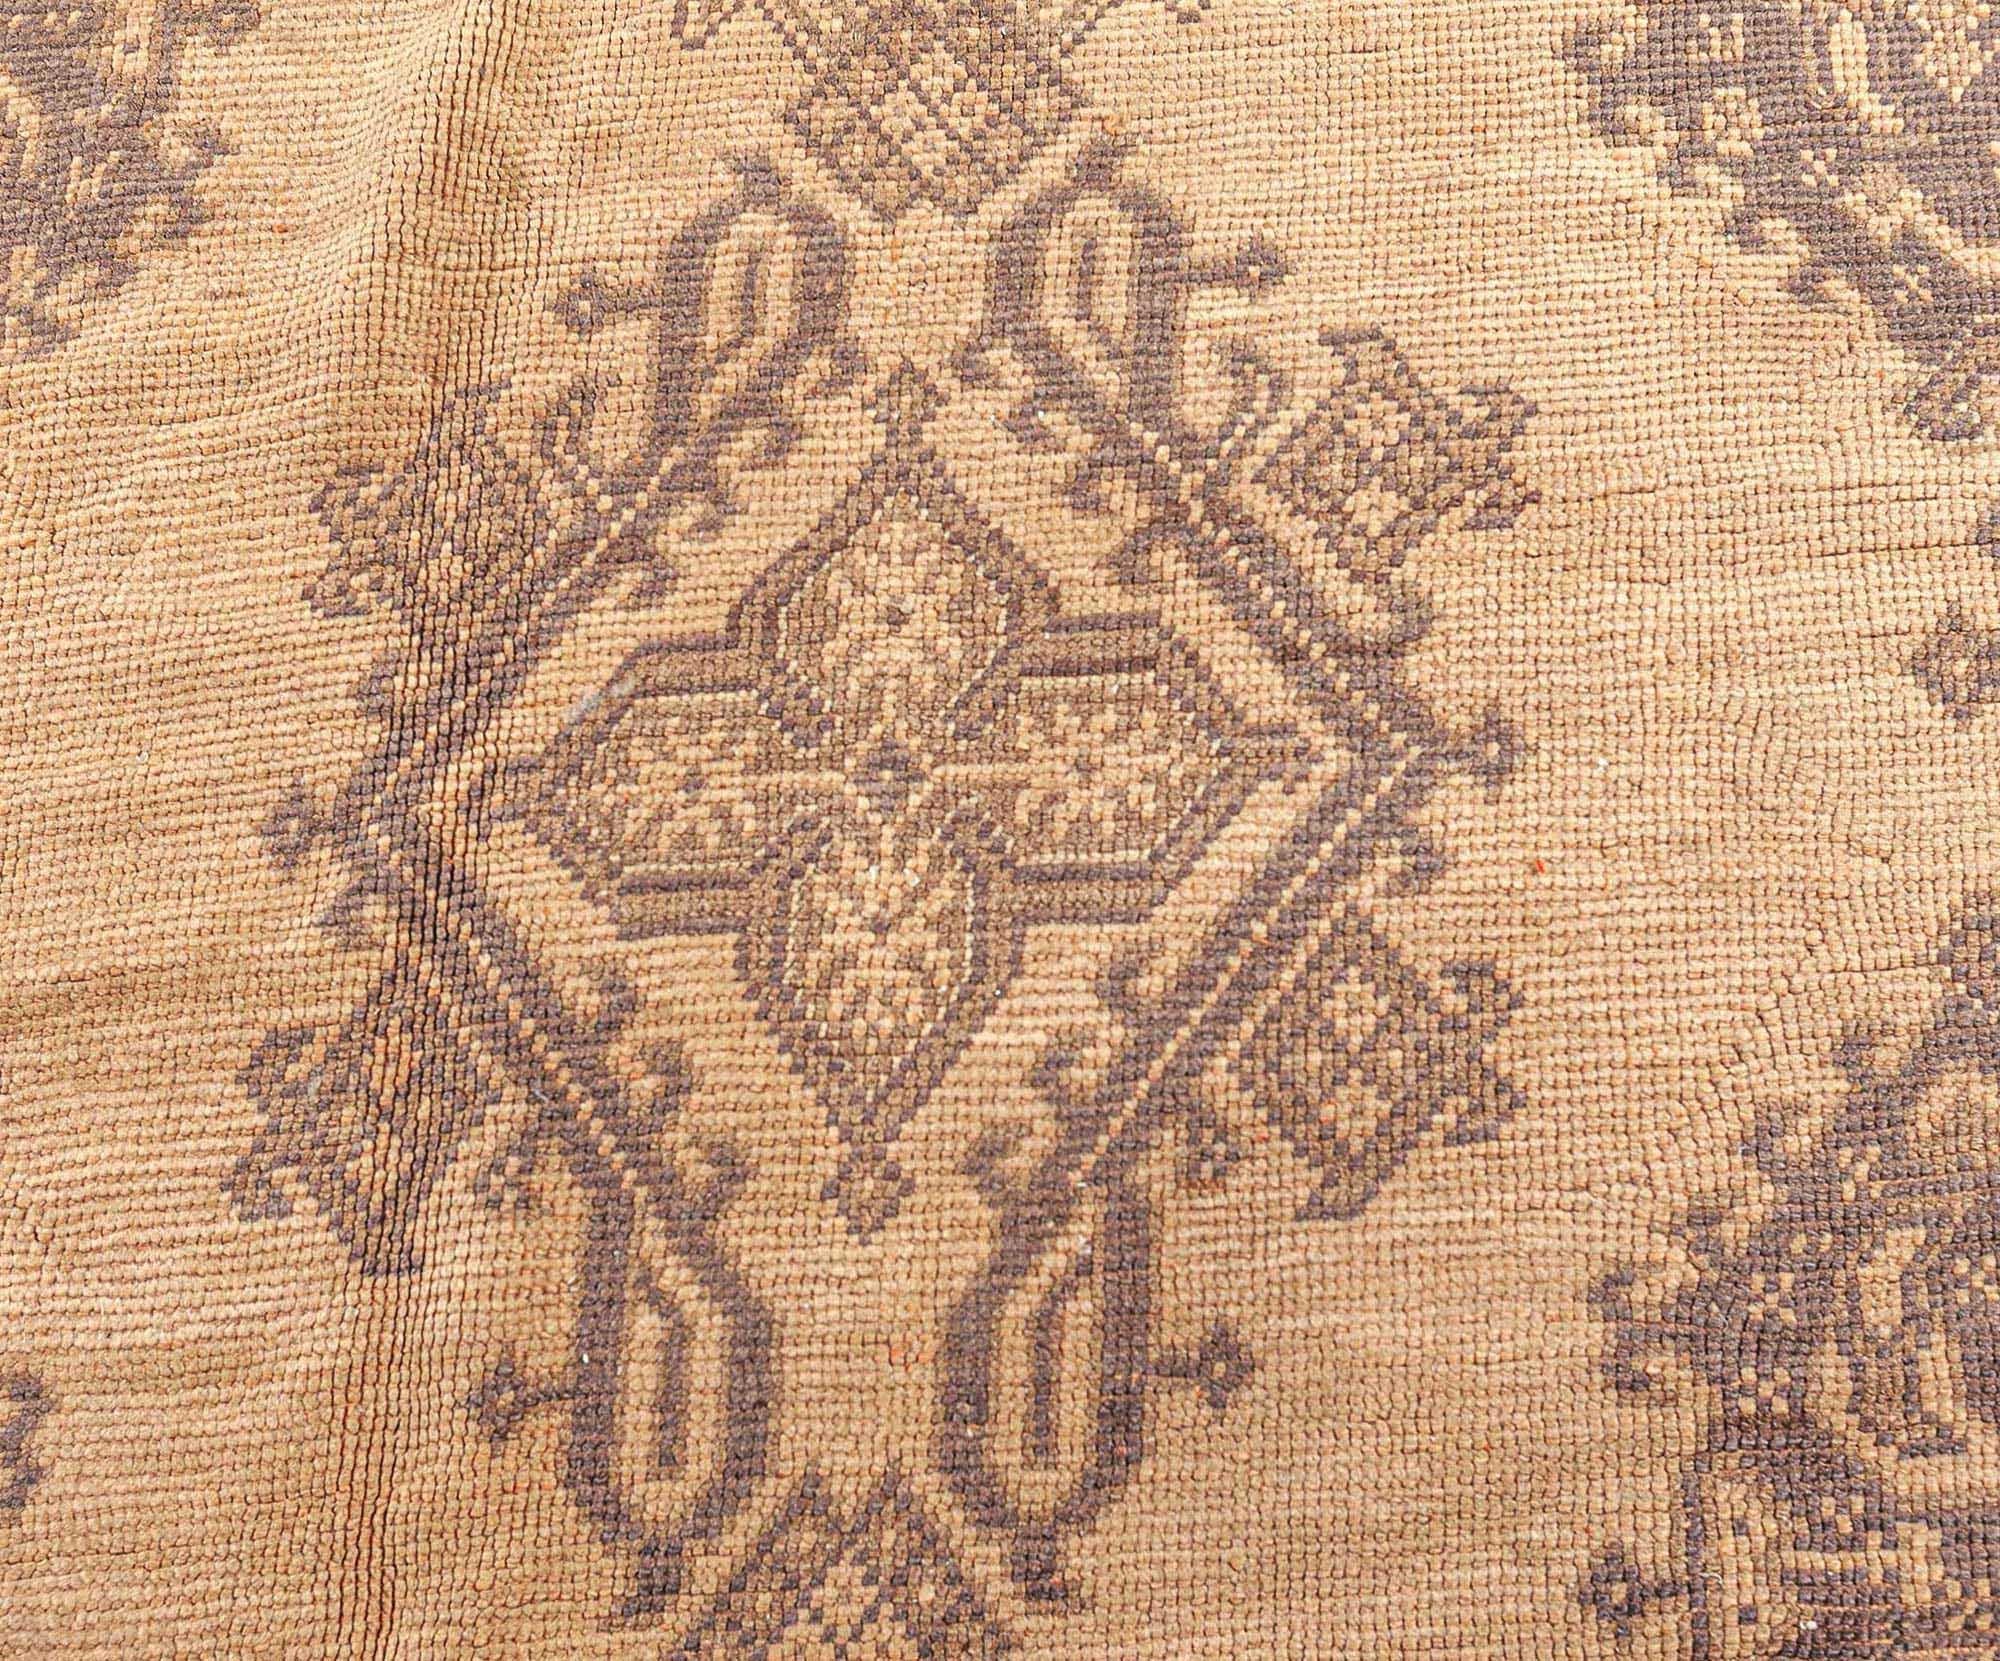 Authentic 1900s Oversized Turkish Oushak rug
Size: 19'0